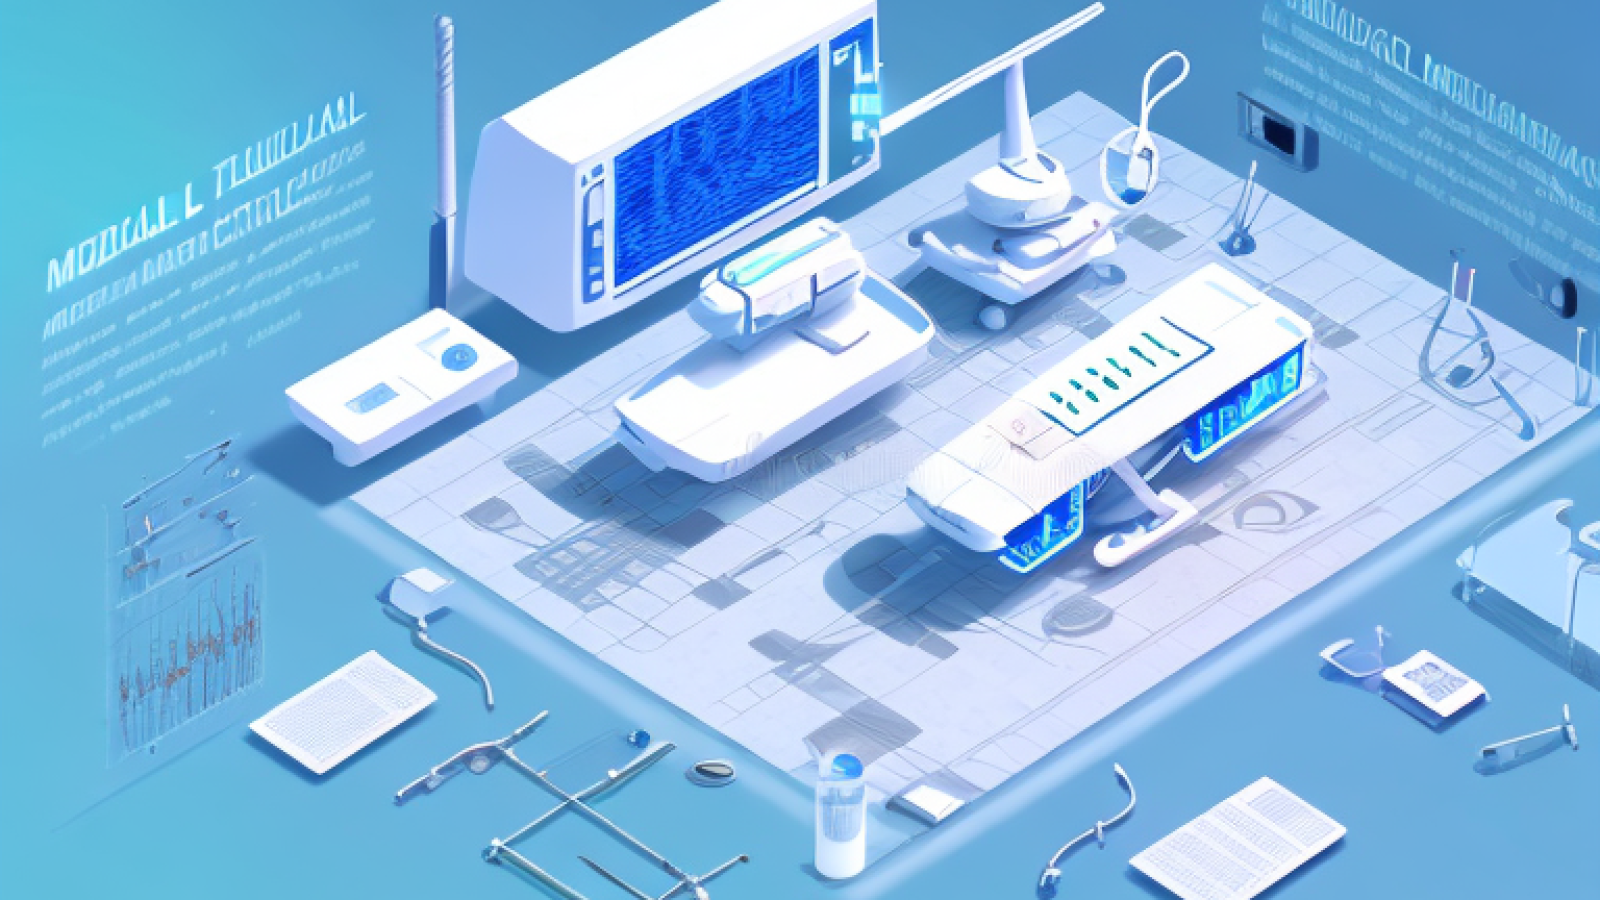 A futuristic medical facility